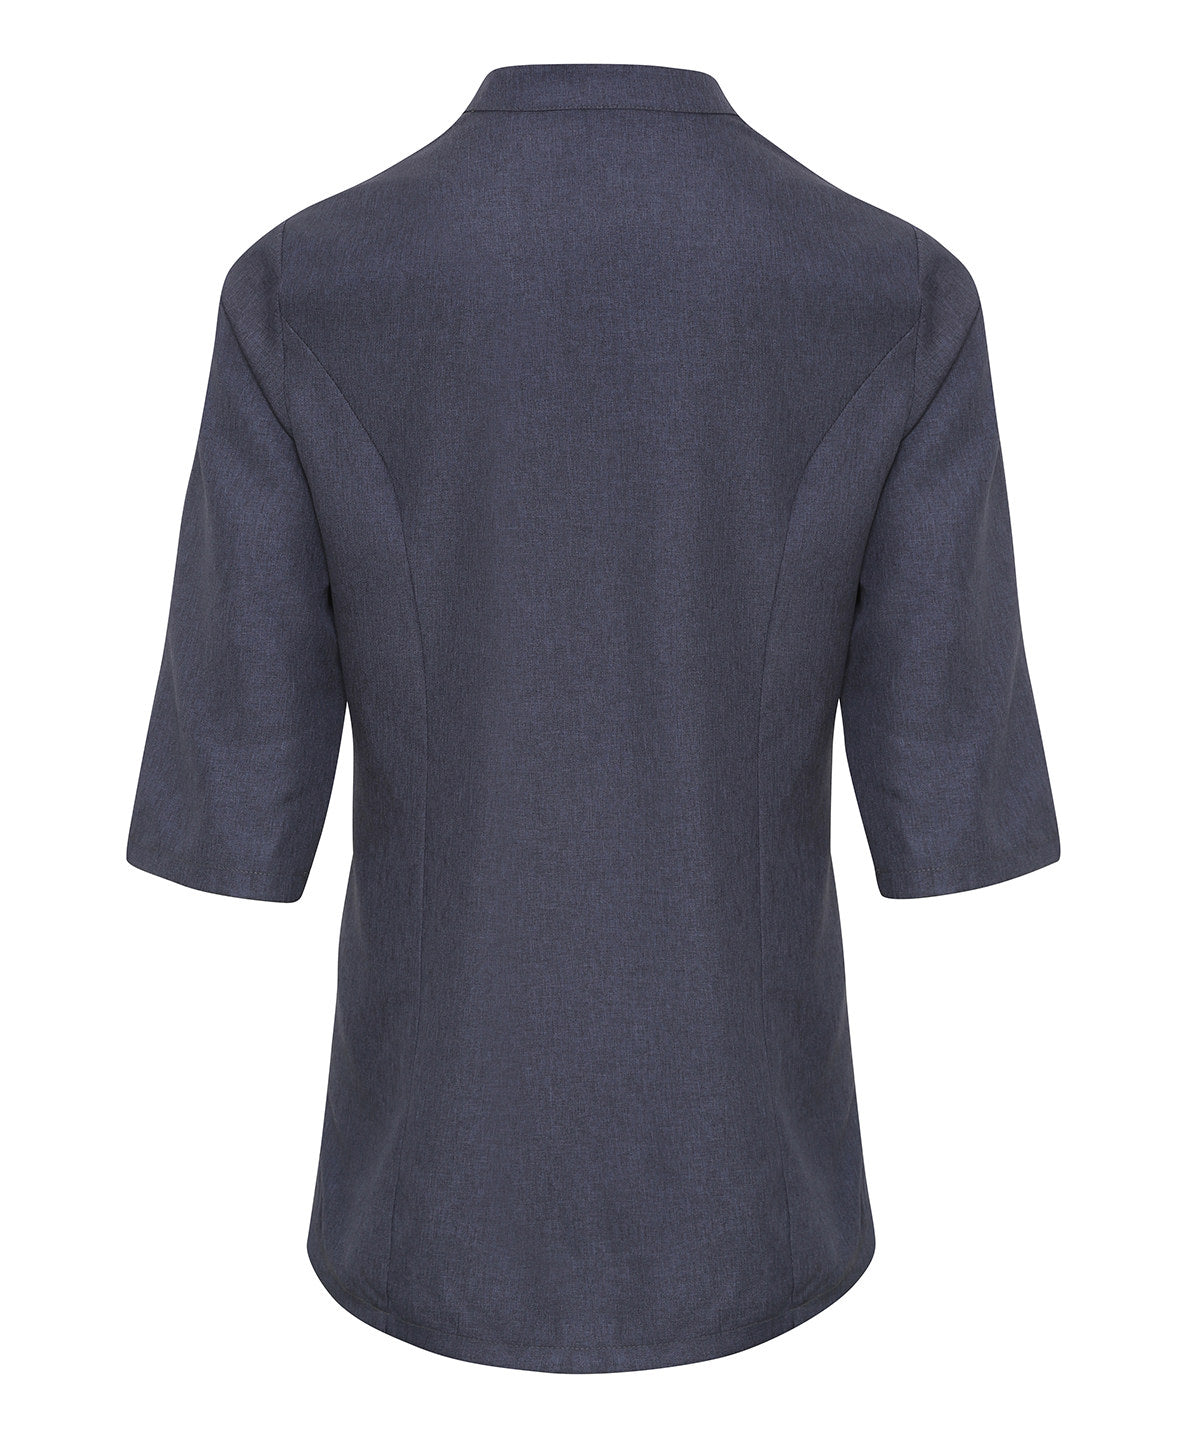 Verbena 'linen look' button-up beauty tunic